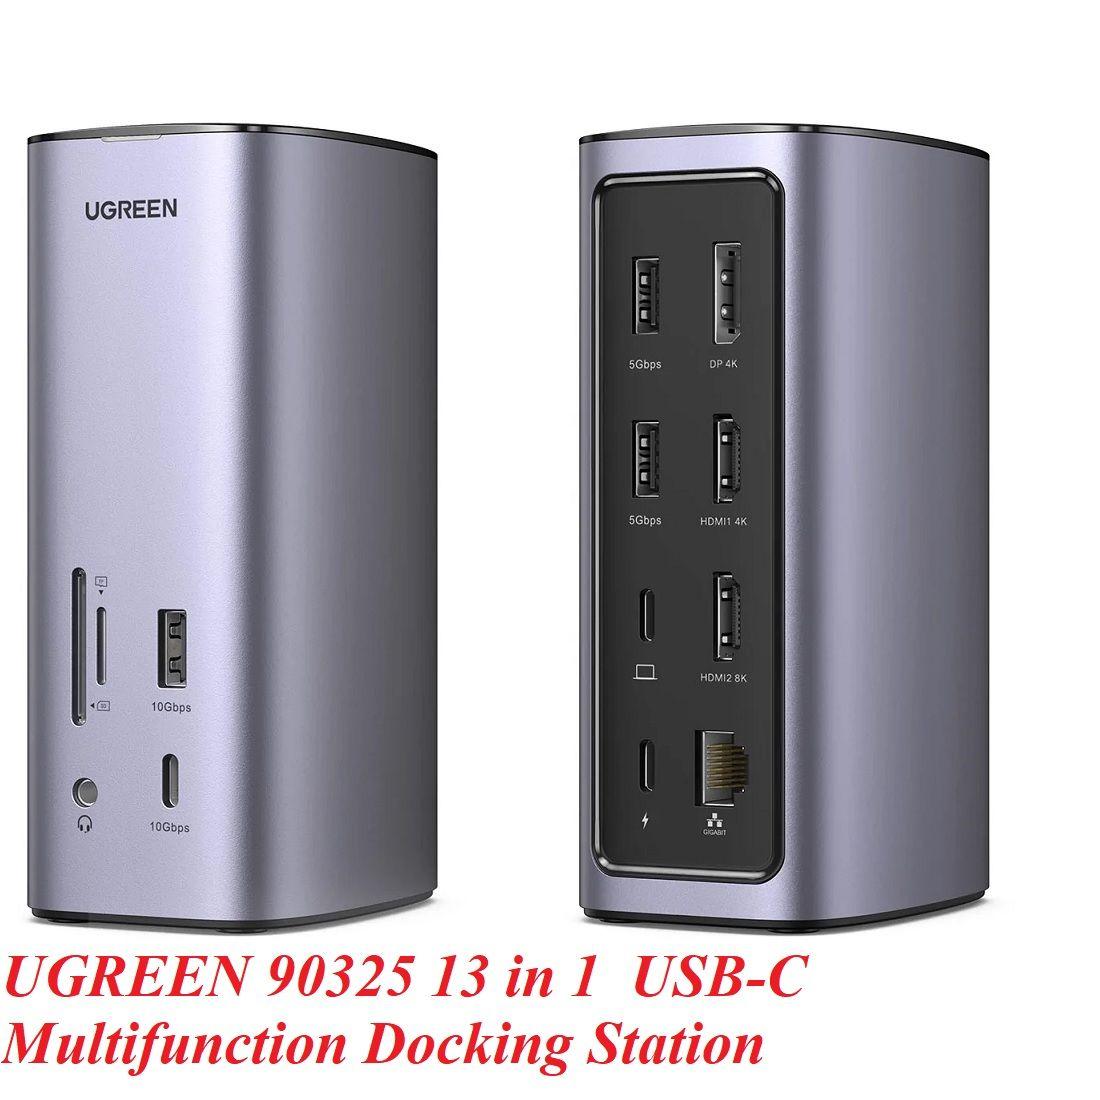 Ugreen UG90325CM555TK sang 3 x USB 3.0 + 2 x HDMI + 1 x DP + gigabits RJ45 + SD + TF + 3.5mm + 100w PD Bộ chuyển đổi USB type C - HÀNG CHÍNH HÃNG